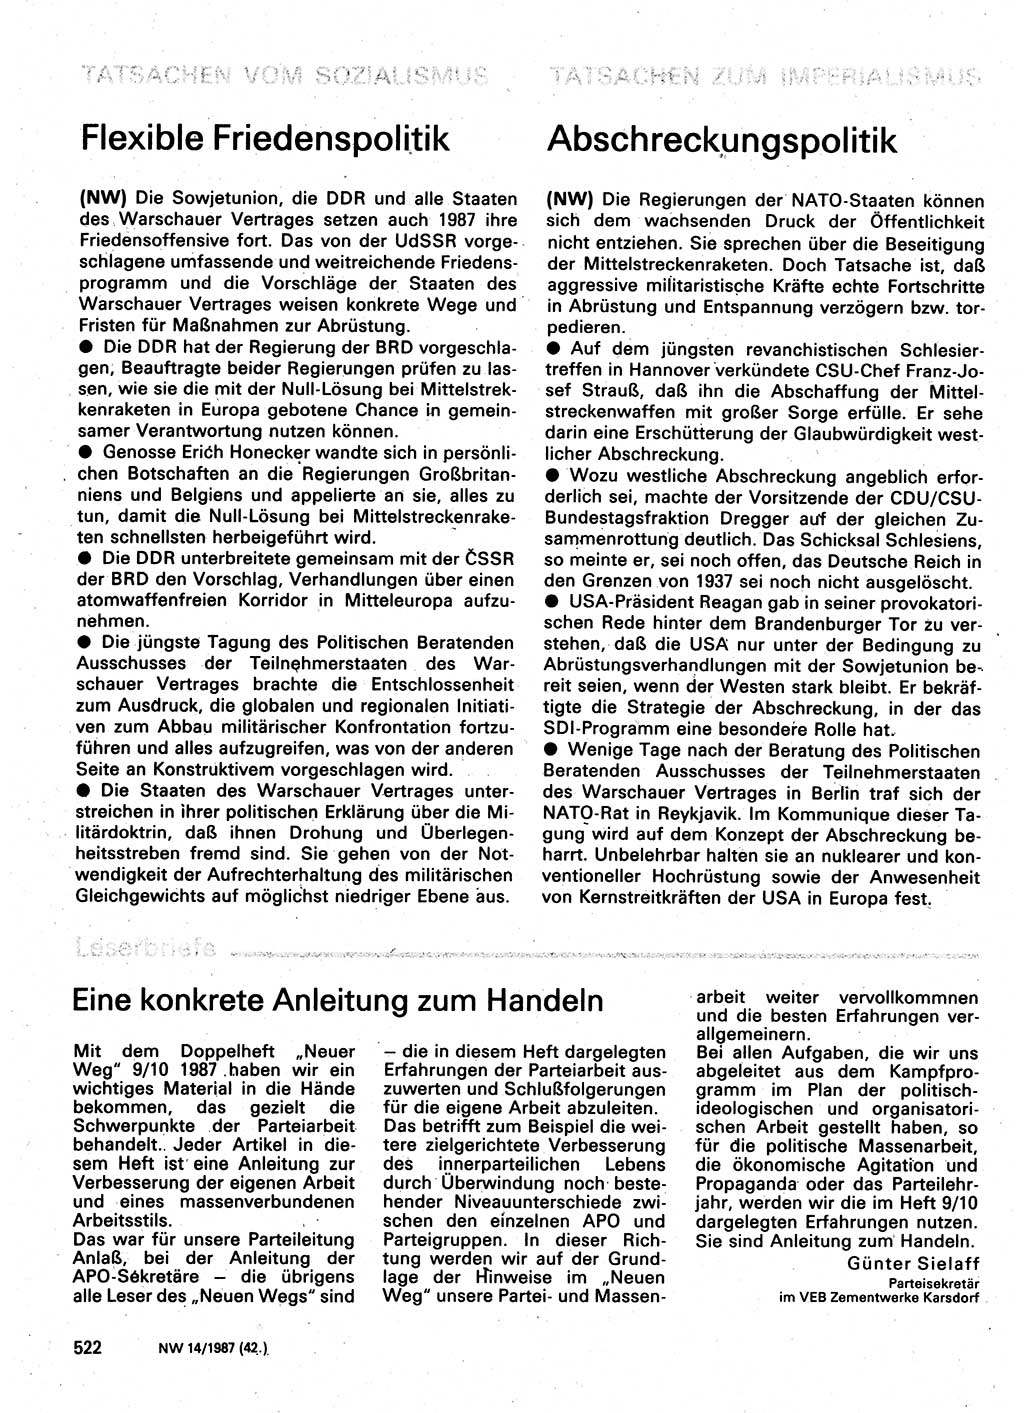 Neuer Weg (NW), Organ des Zentralkomitees (ZK) der SED (Sozialistische Einheitspartei Deutschlands) für Fragen des Parteilebens, 42. Jahrgang [Deutsche Demokratische Republik (DDR)] 1987, Seite 522 (NW ZK SED DDR 1987, S. 522)